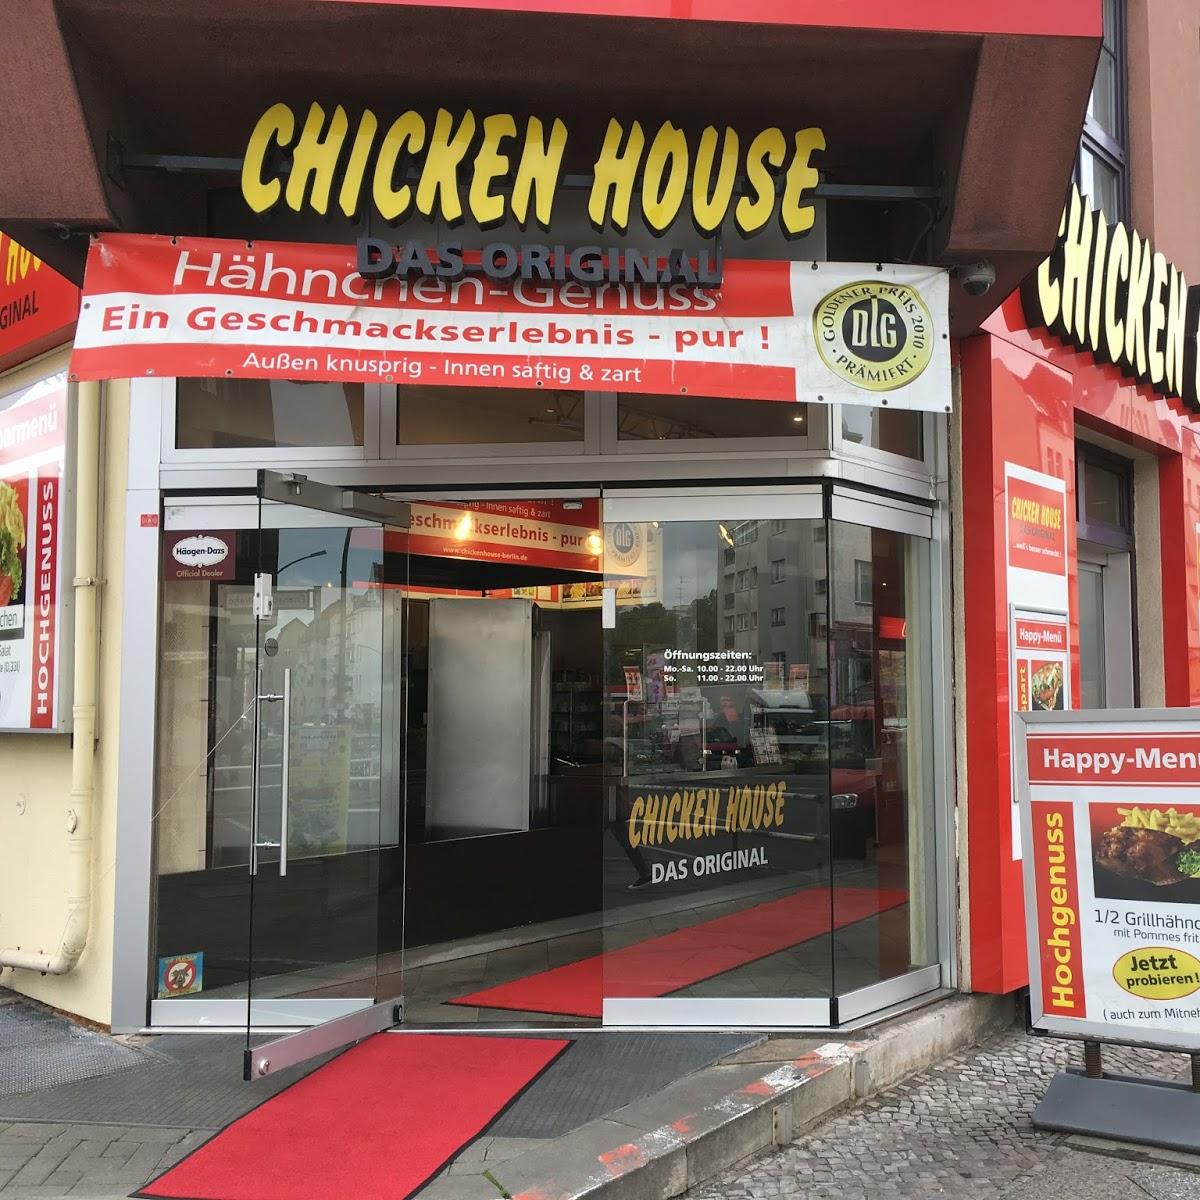 Restaurant "Chicken House Das Original" in  Berlin